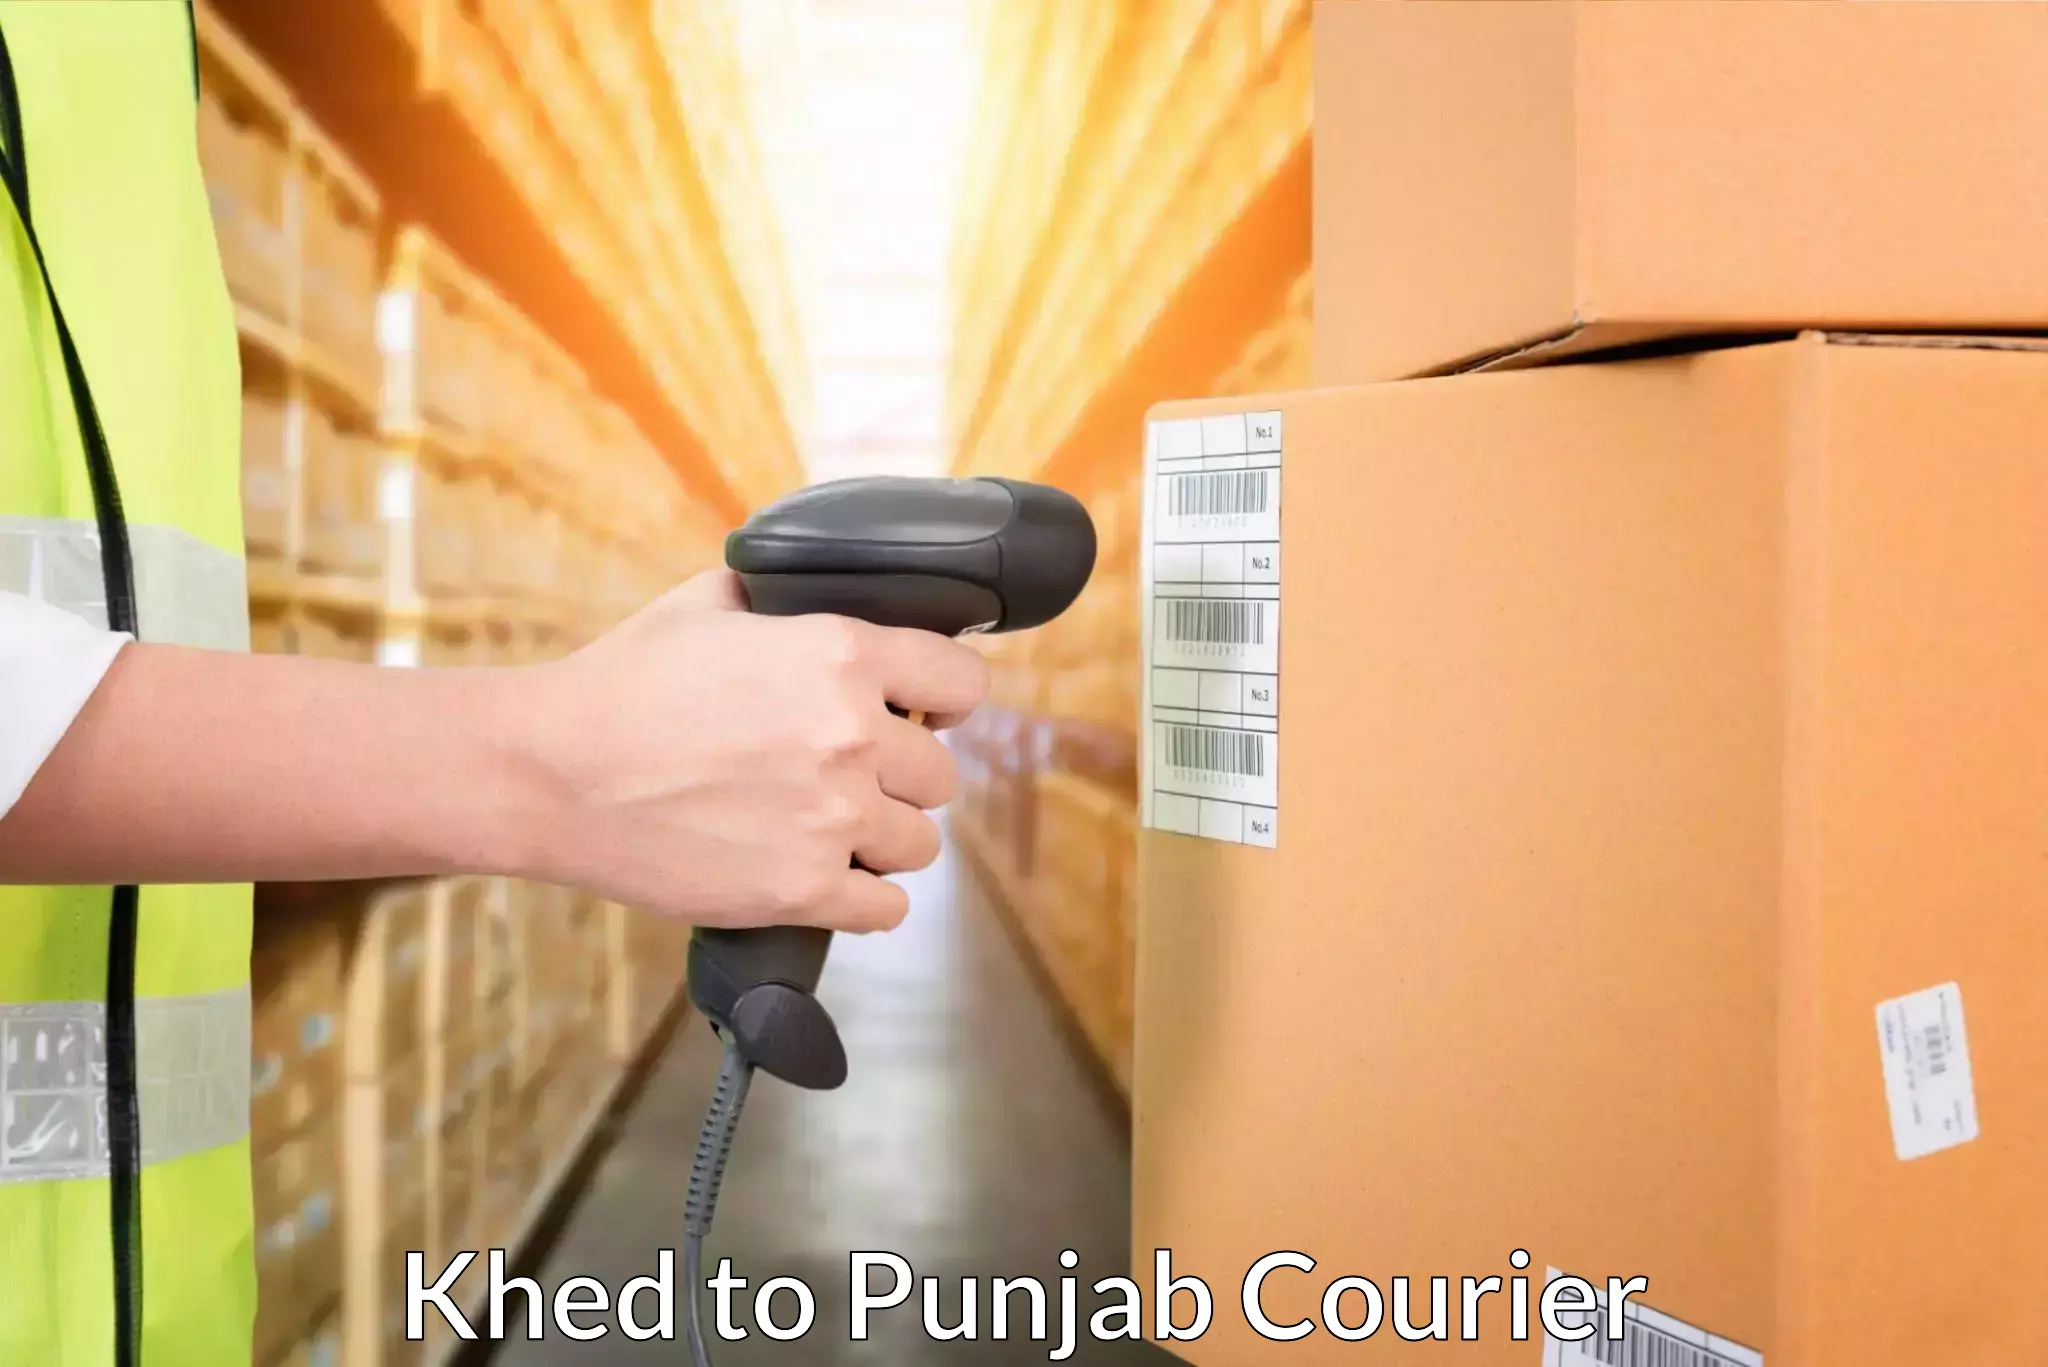 Smart parcel delivery Khed to Mandi Gobindgarh